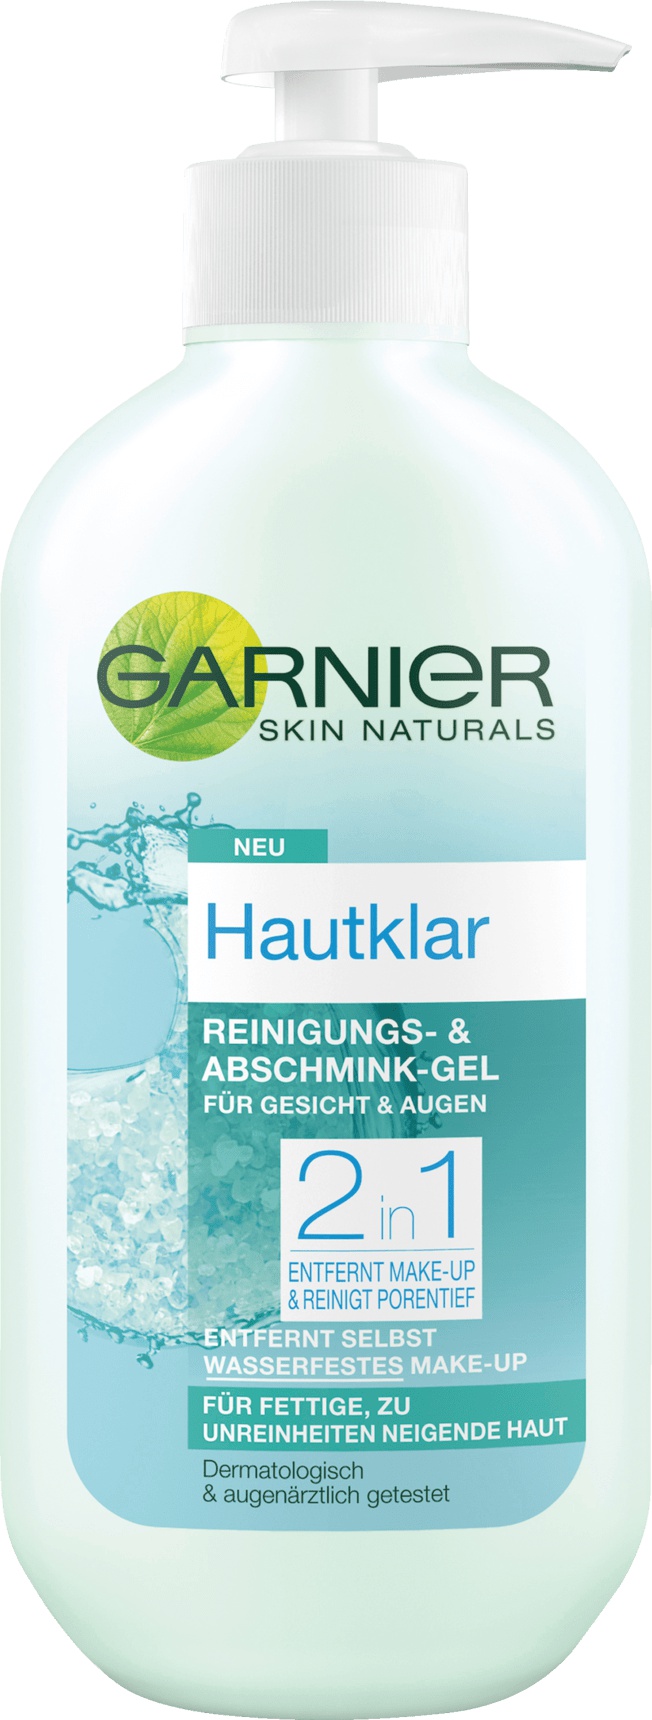 Garnier Skin Naturals Reinigungsgel Hautklar Reinigungs- & Abschmink-Gel 2 in 1